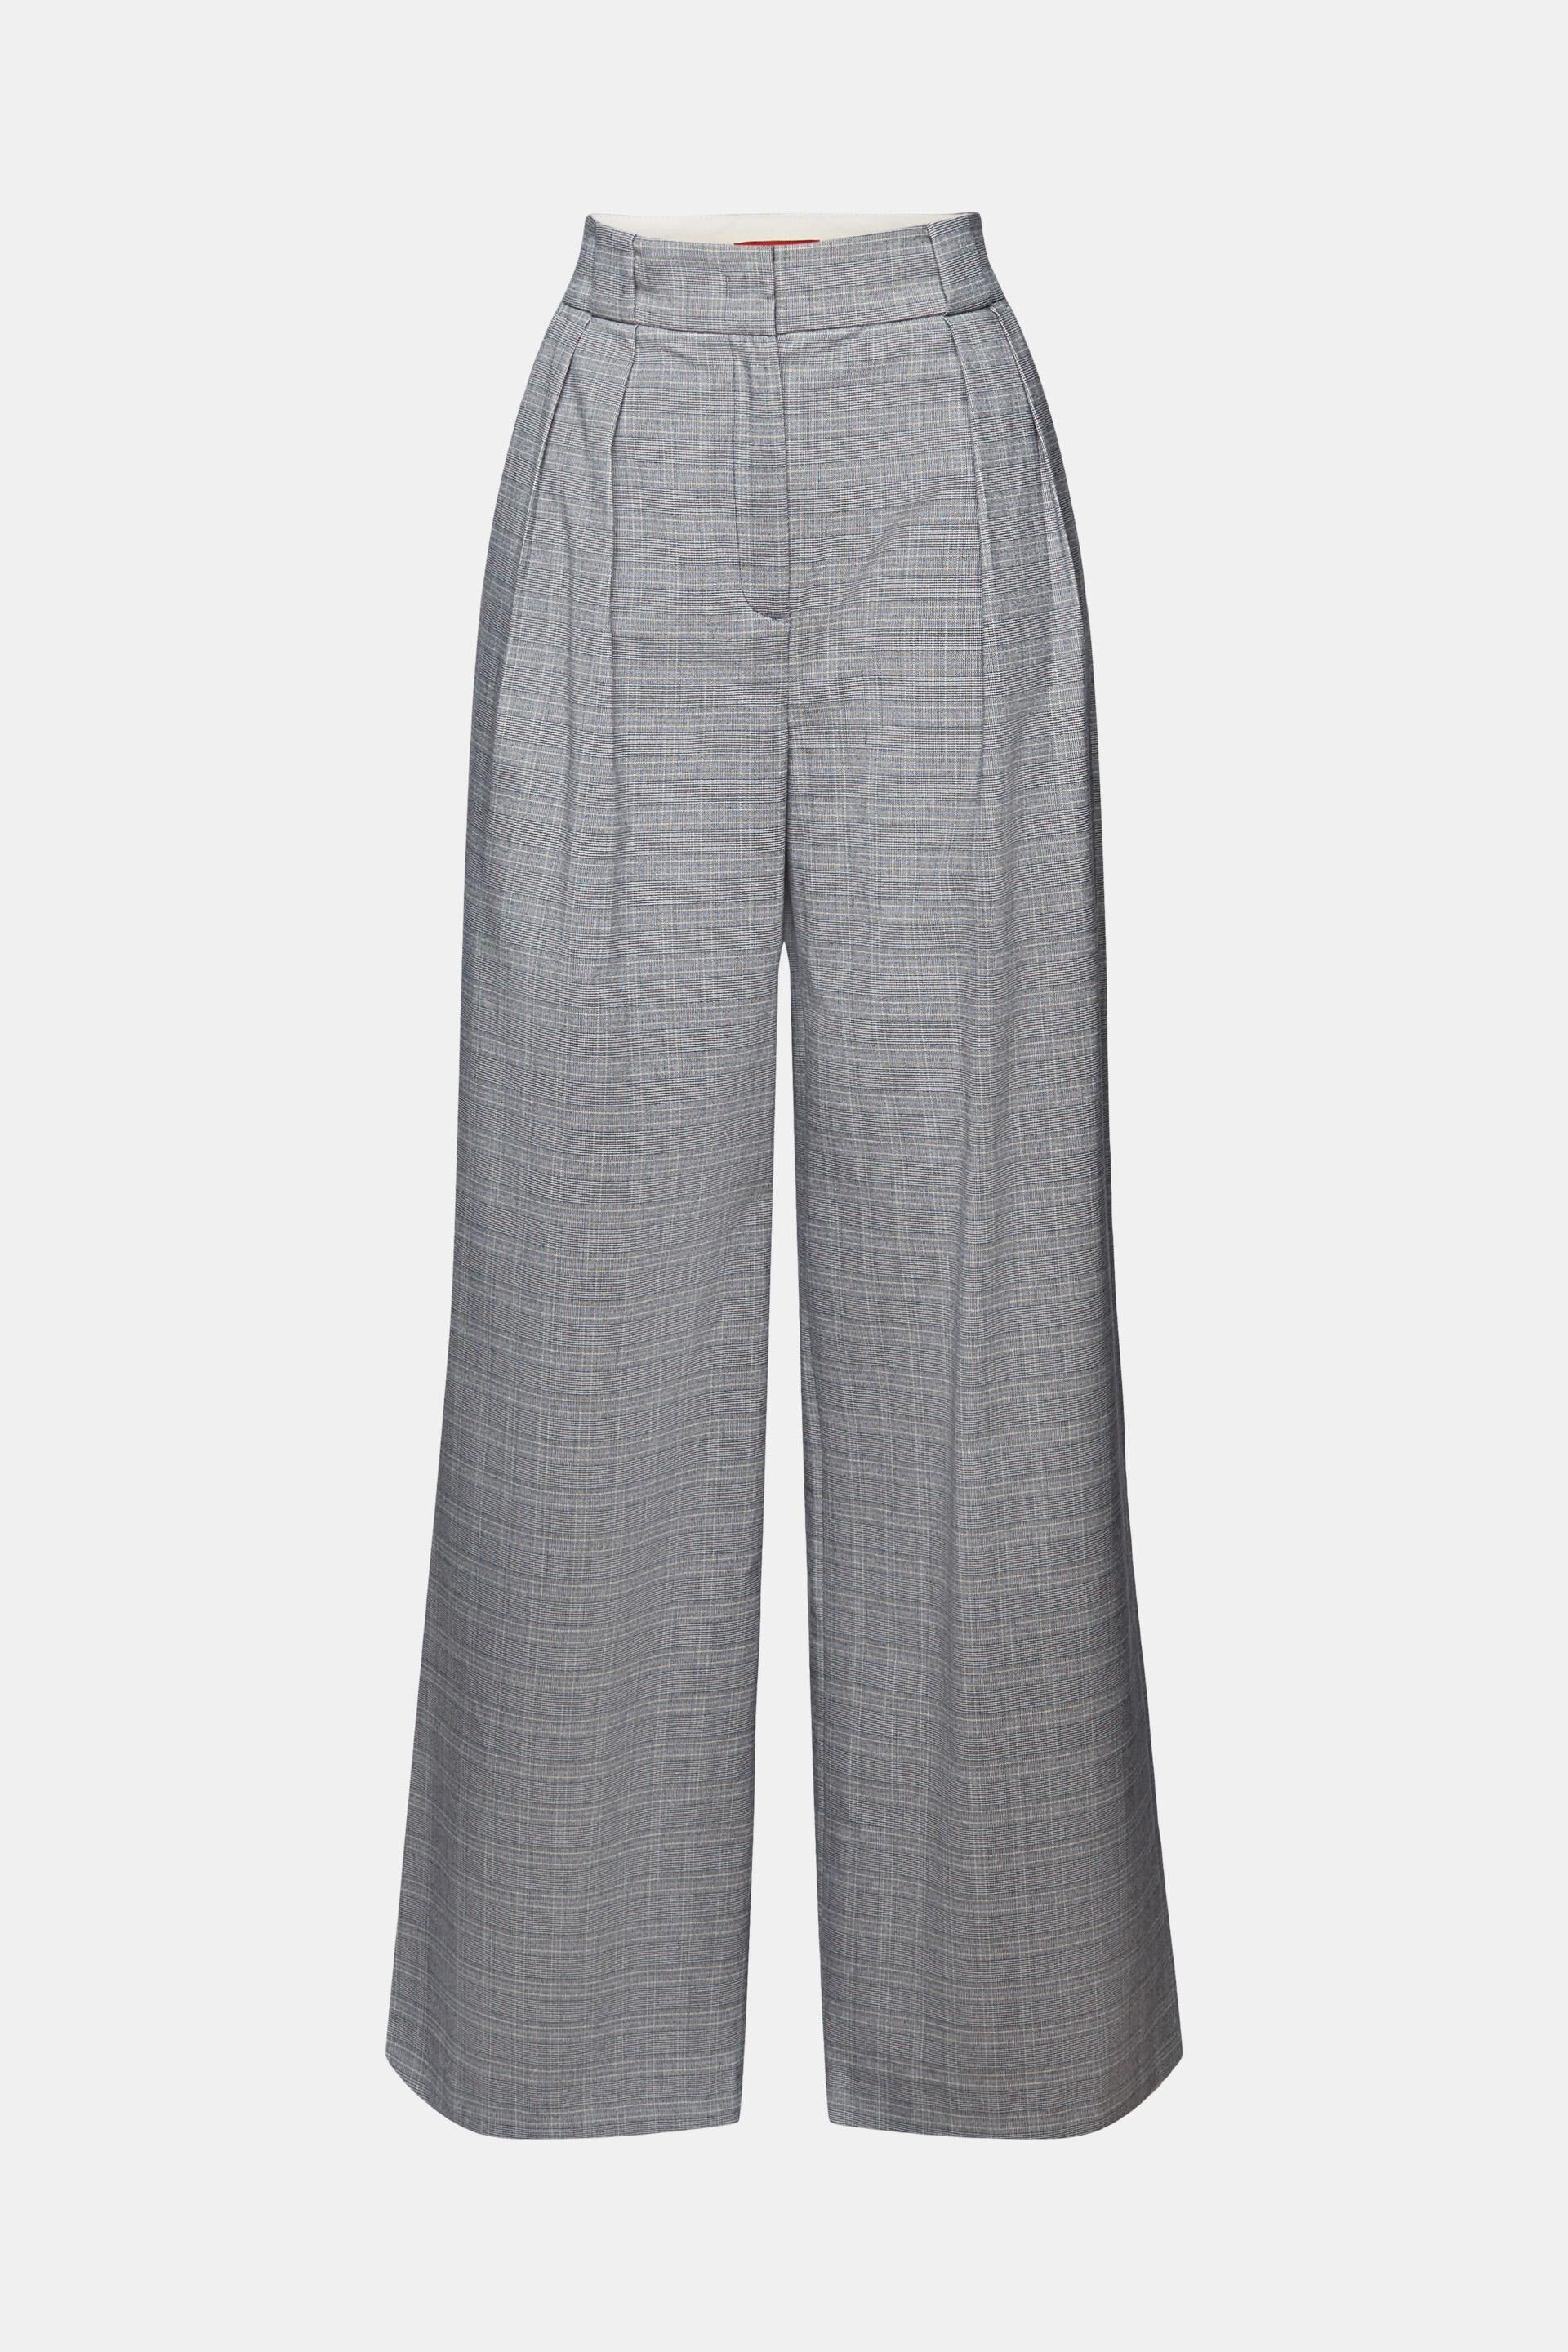 Men s Gunn Tartan Casual Dress Golf Trousers 30-46